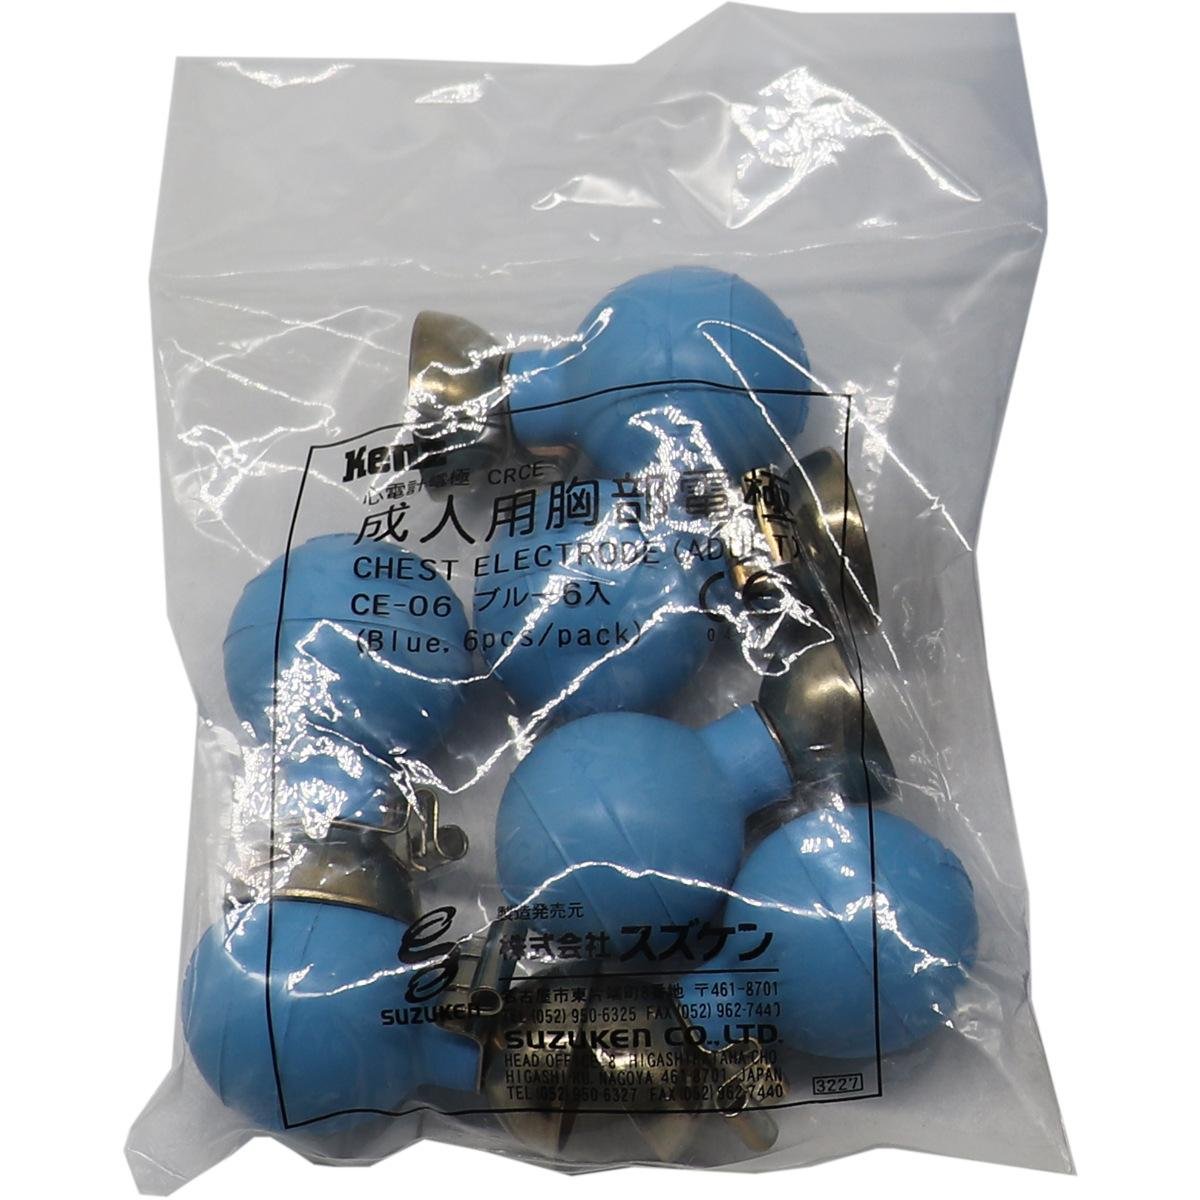 Kenz Cardico 1211 ECG cable electrode balls CE-06 5